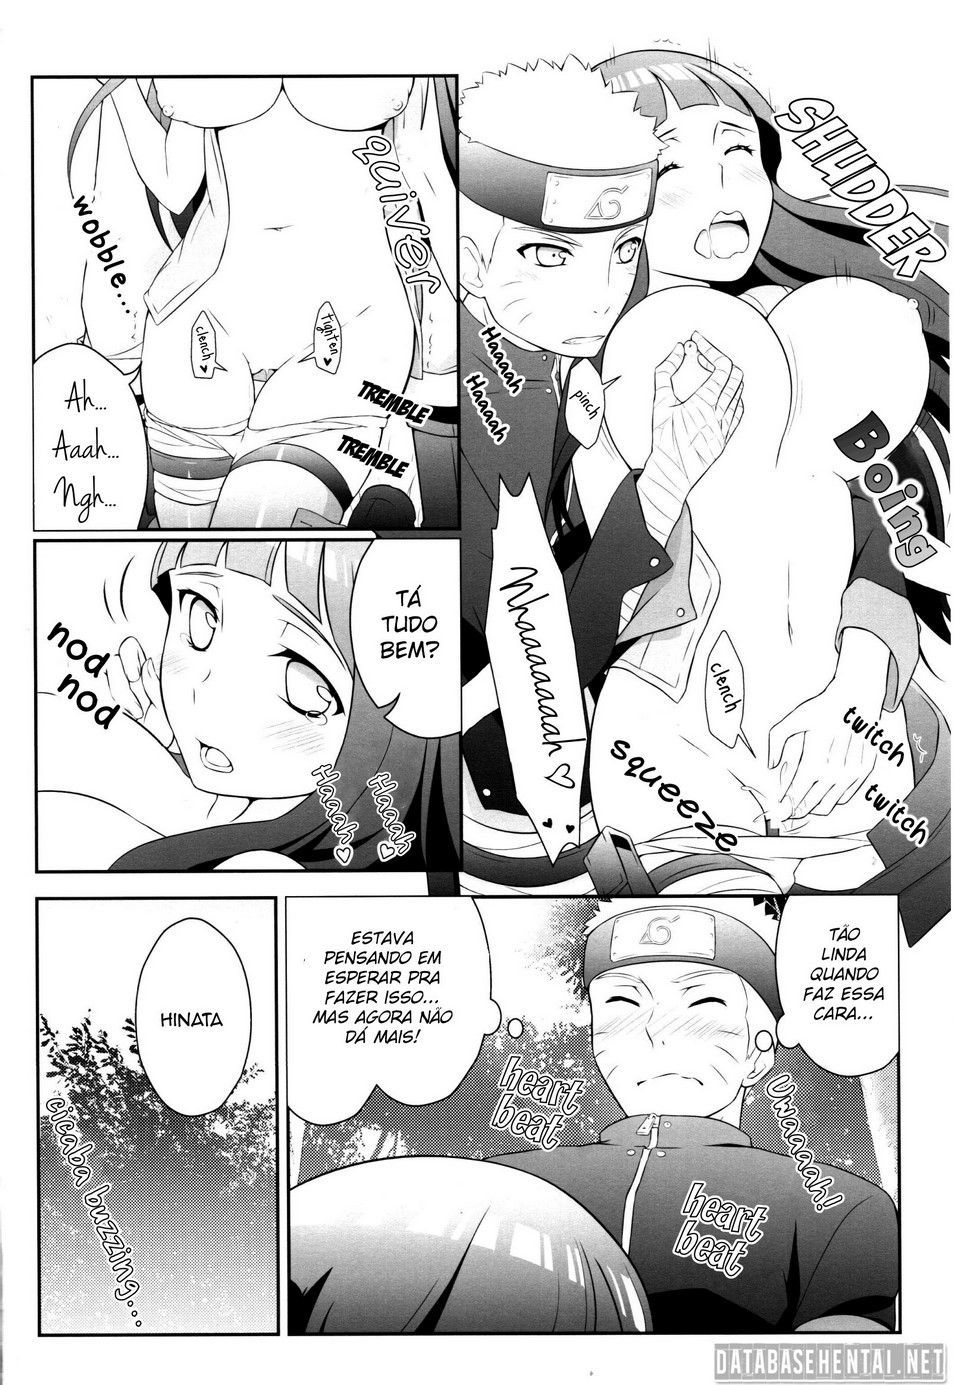 Naruto transa com Hinata na missão